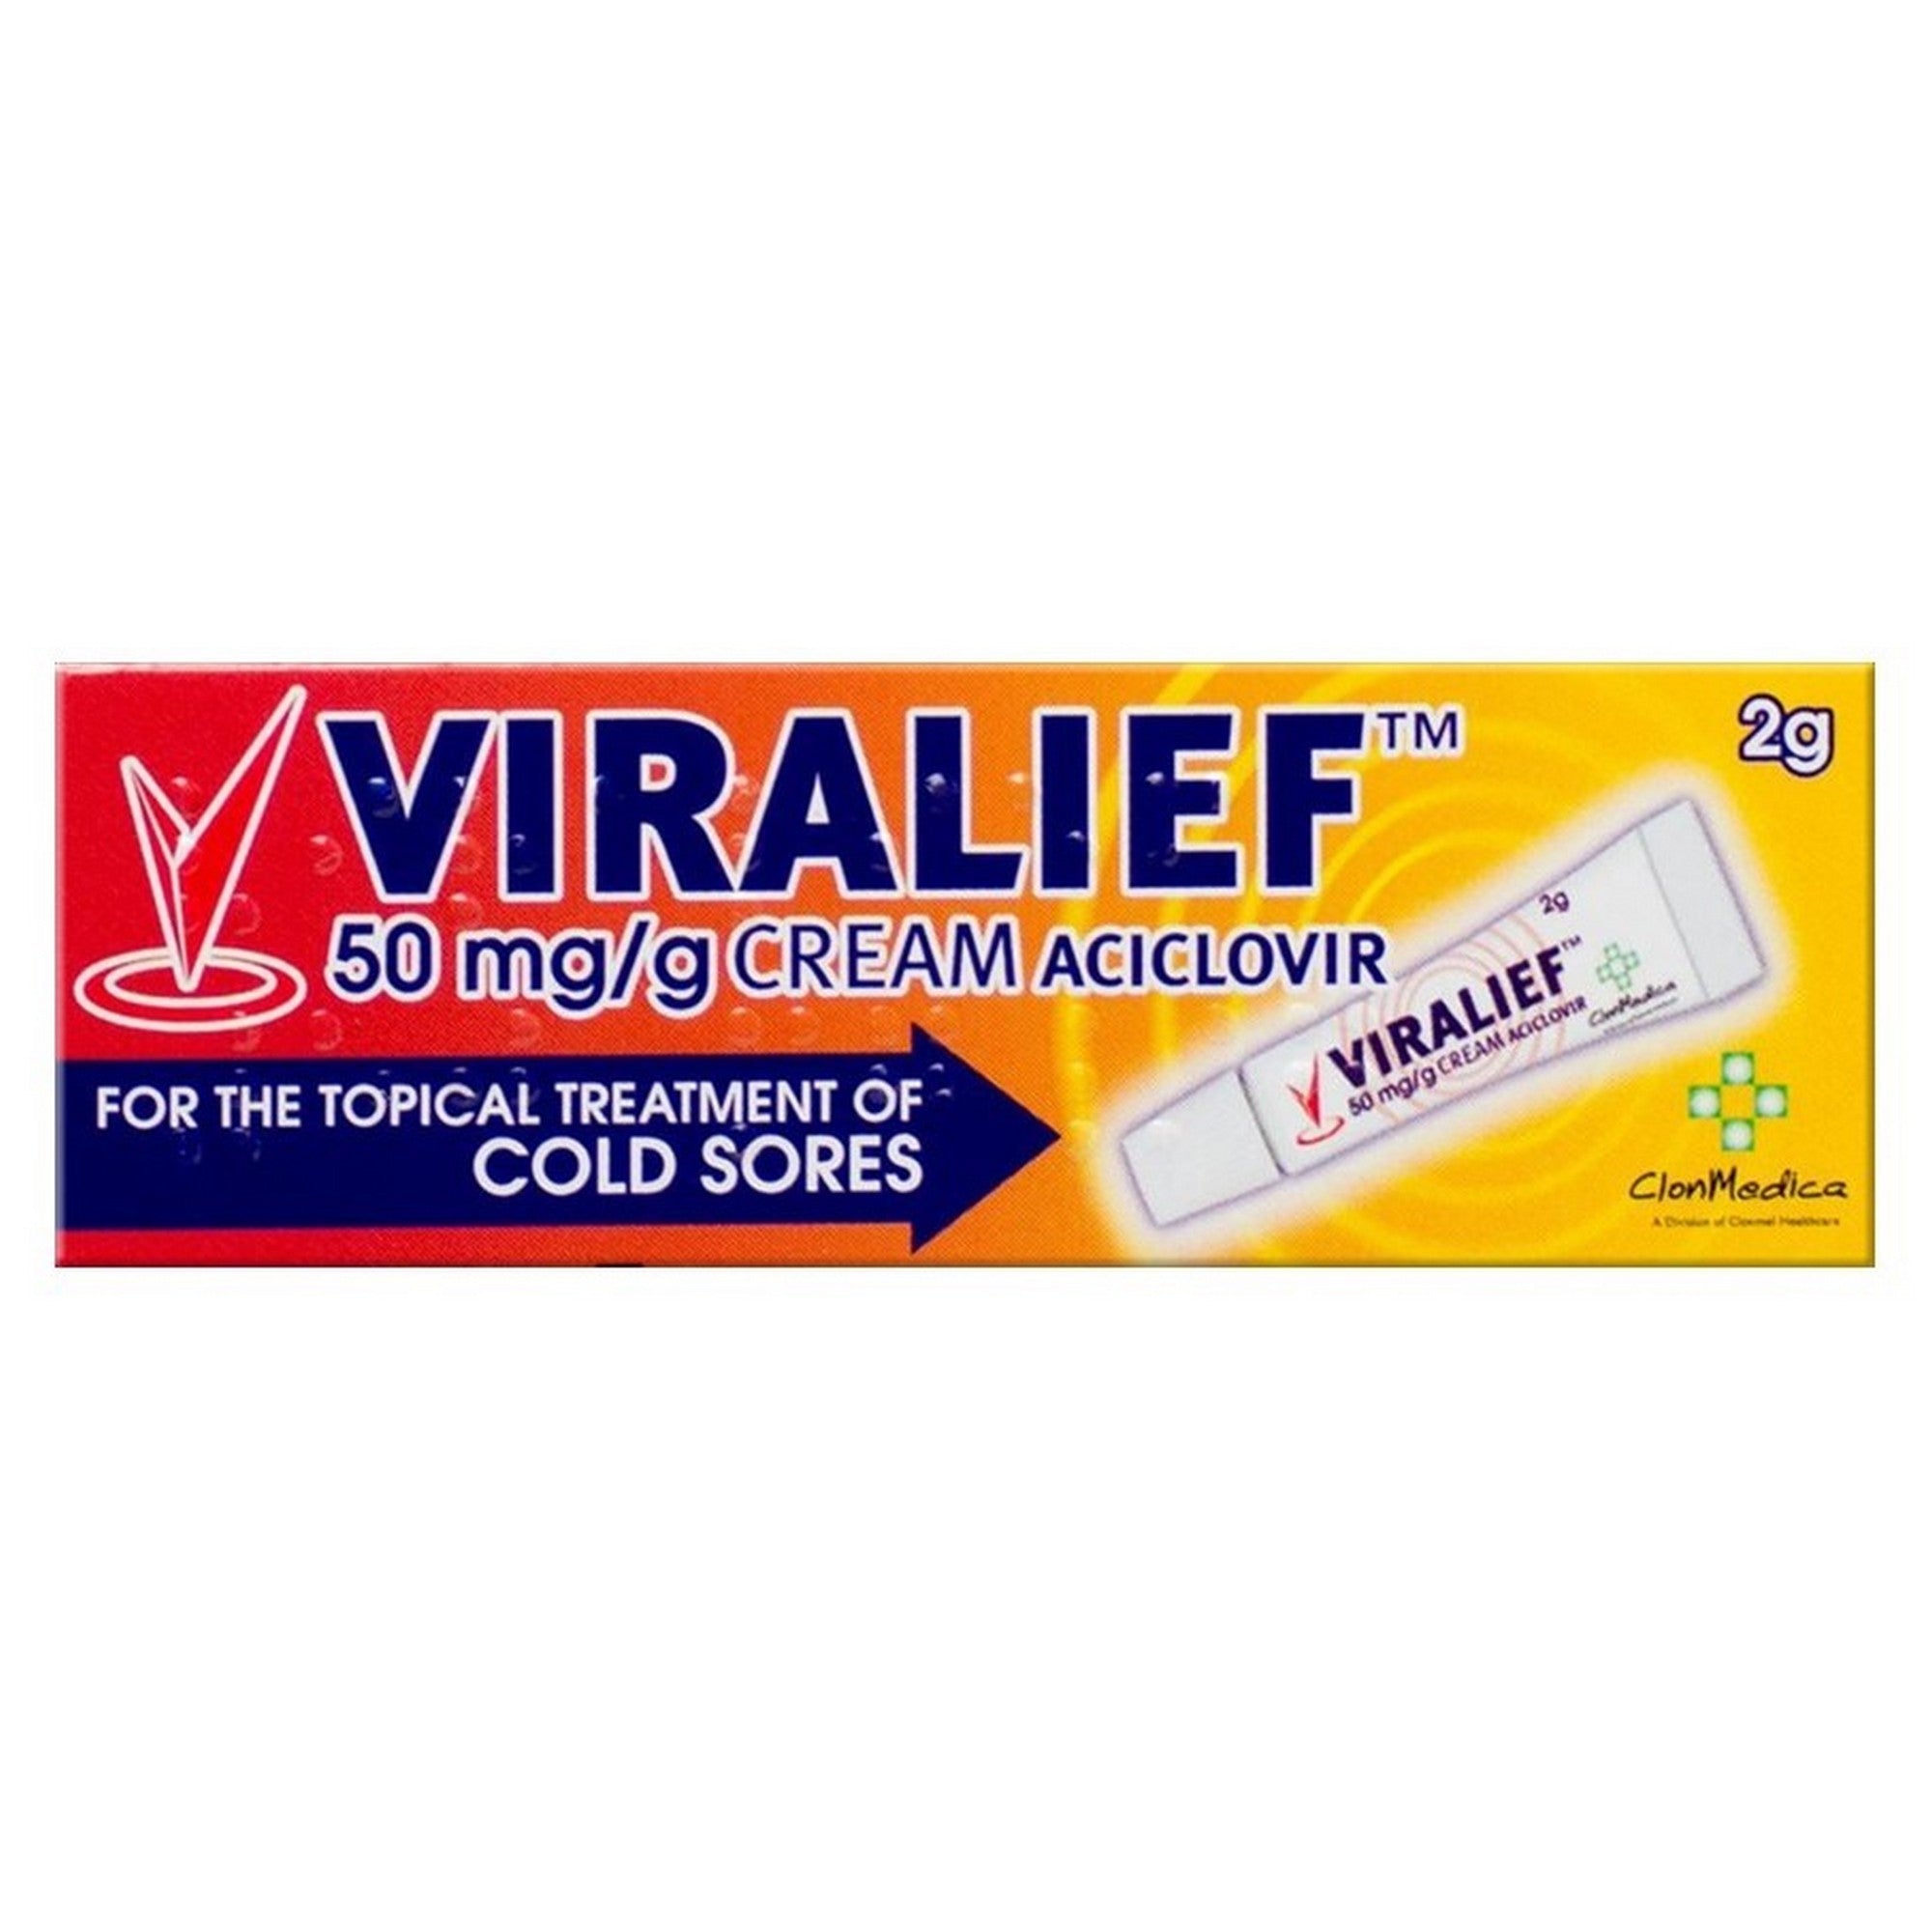 Viralief 50mg/g Cream